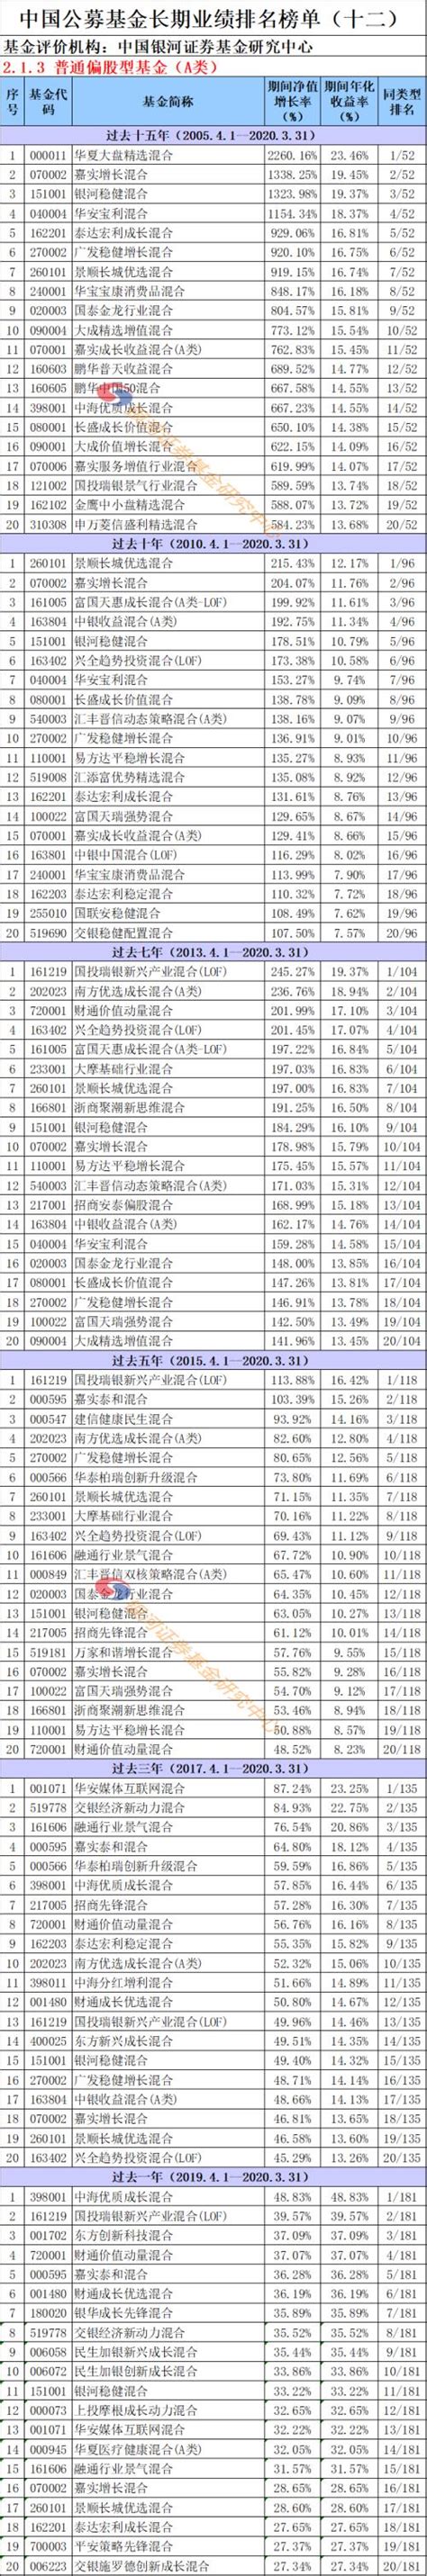 中国公募基金长期业绩排名榜单（24个分类）-基金频道-金融界